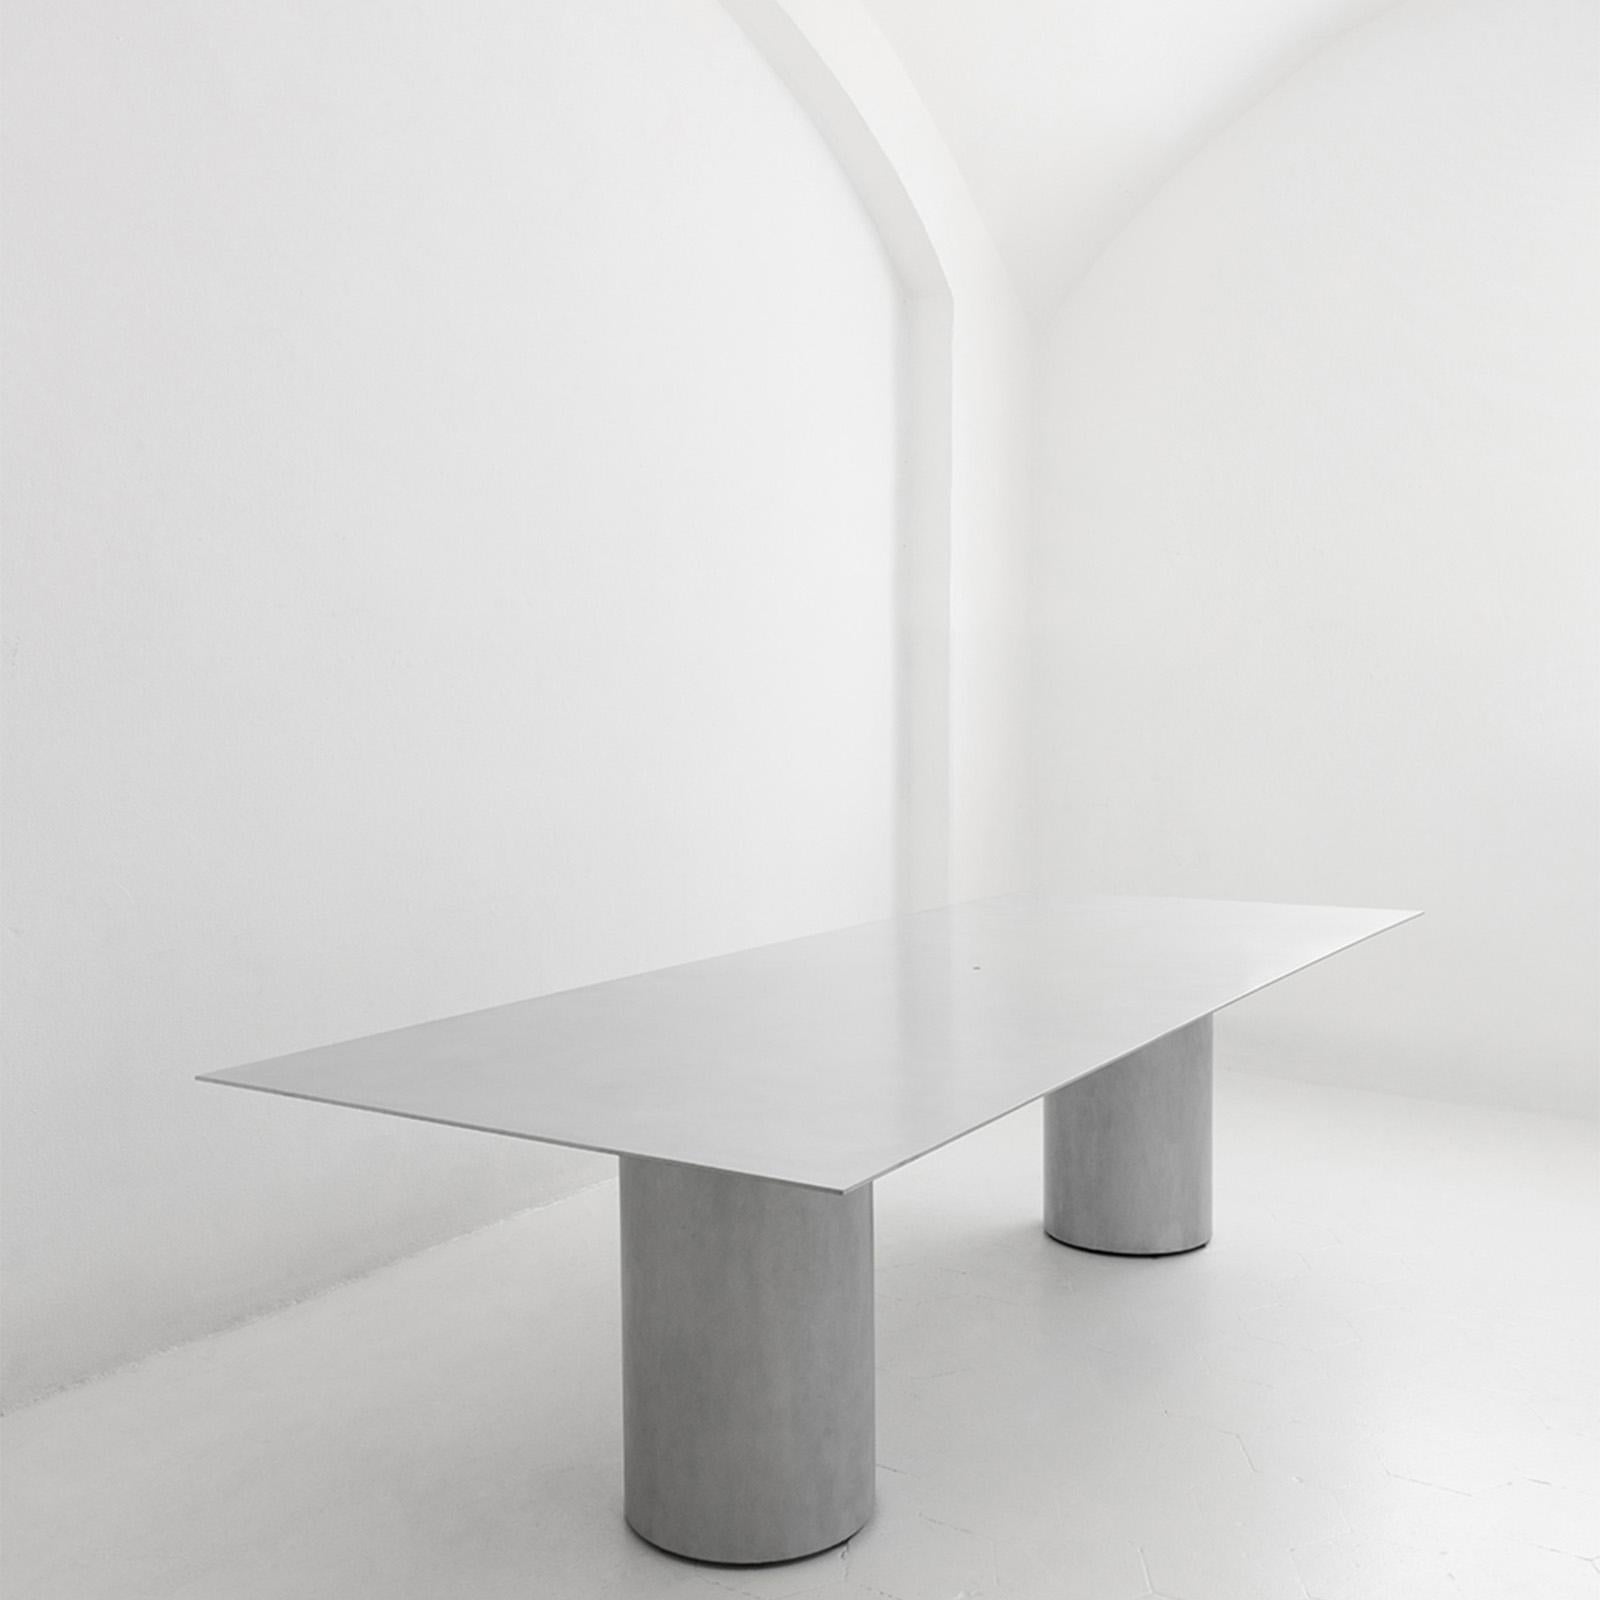 Das Hauptmerkmal des Tisches ist das Ergebnis seiner Konstruktion, so dass die Platte eine minimale Dicke von 6 mm, unter Ausnutzung der Qualitäten und Eigenschaften von Aluminium.

Materialien: Aluminium und rostfreier Stahl. Auflage: Rossana